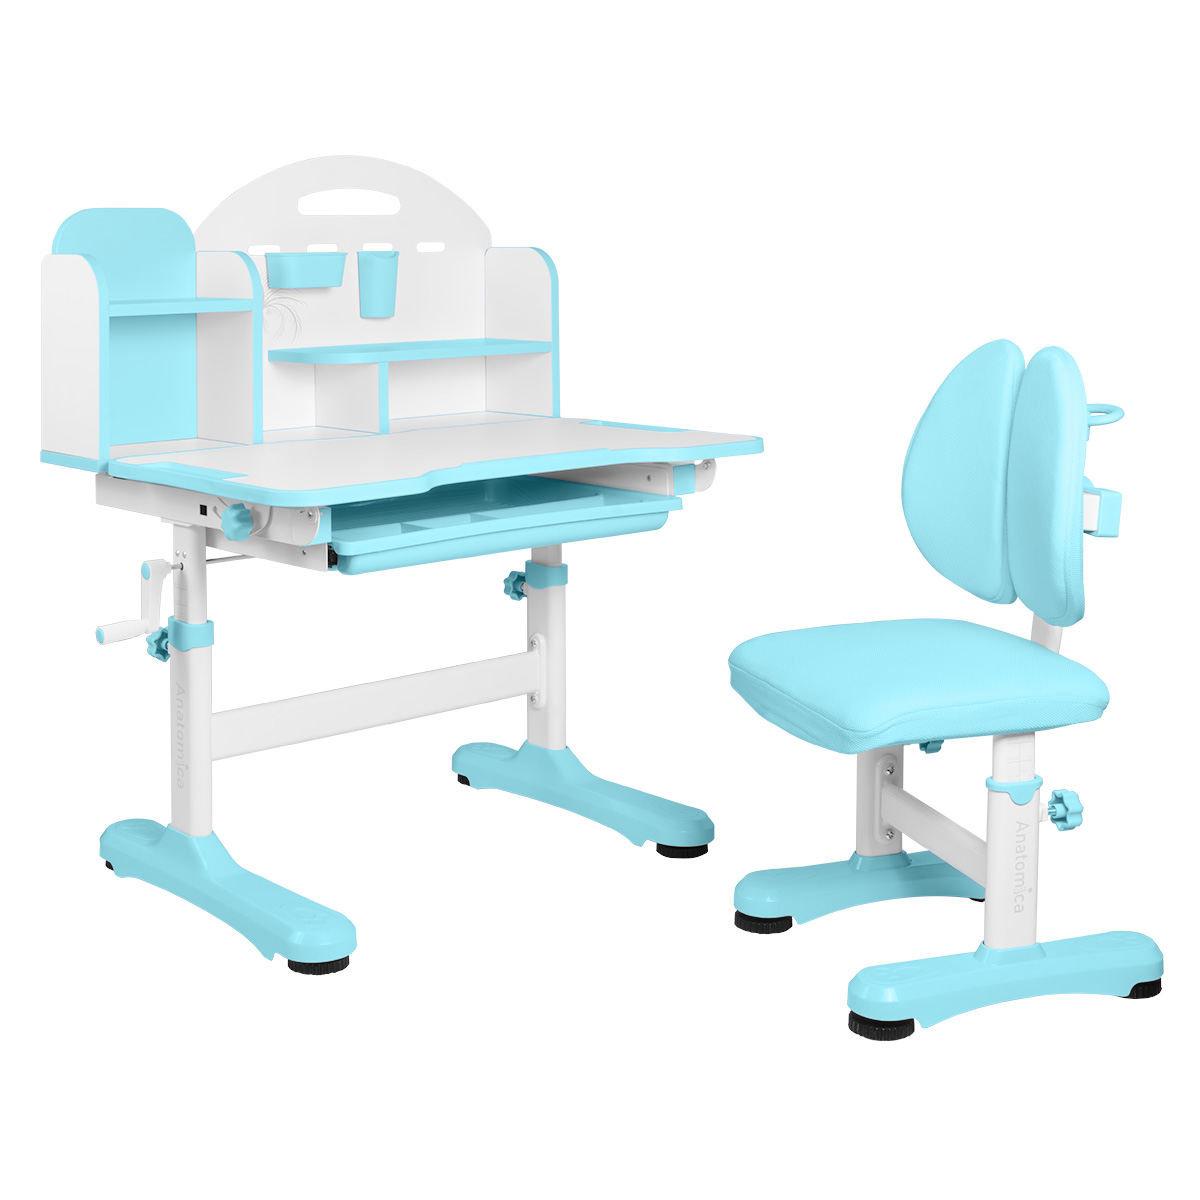 Комплект Anatomica Fiona парта, стул, надстройка, выдвижной ящик, голубой anatomica комплект fiona парта стул надстройка выдвижной ящик